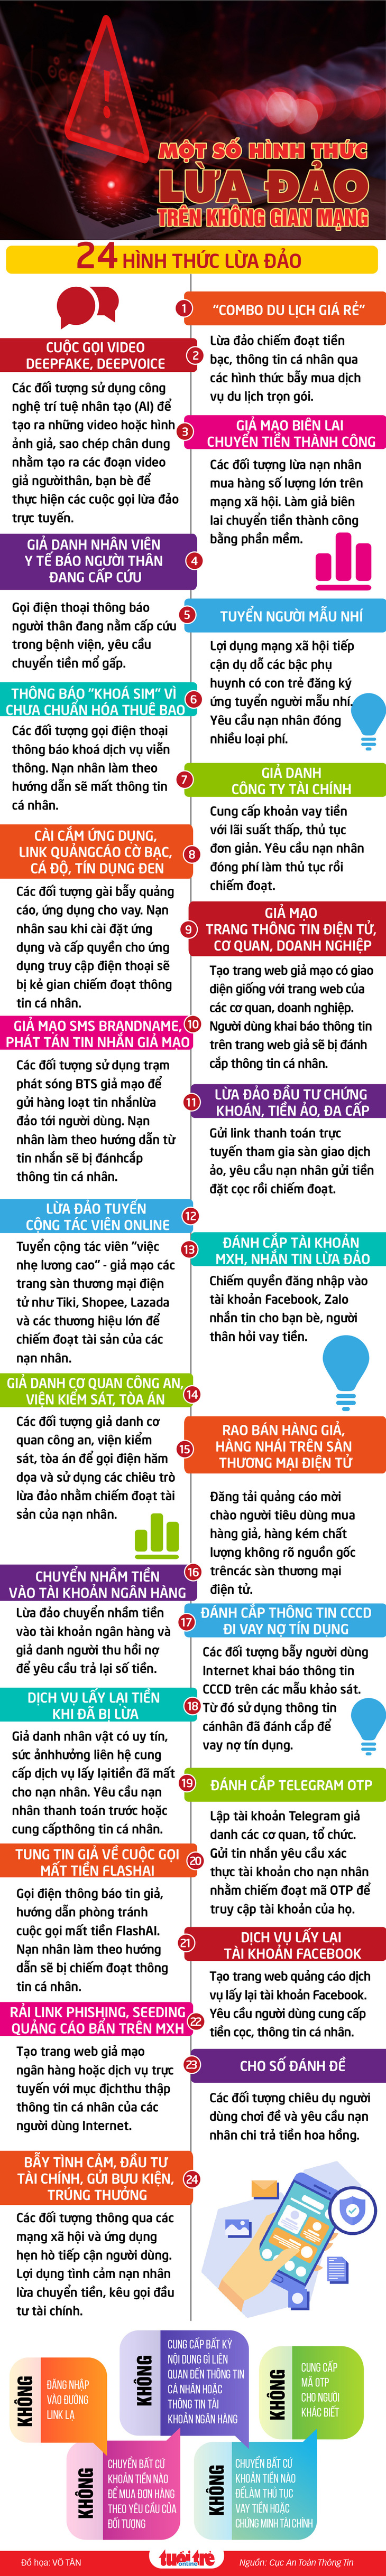 Nhận diện 24 hình thức lừa đảo trên không gian mạng Việt Nam - Ảnh 2.